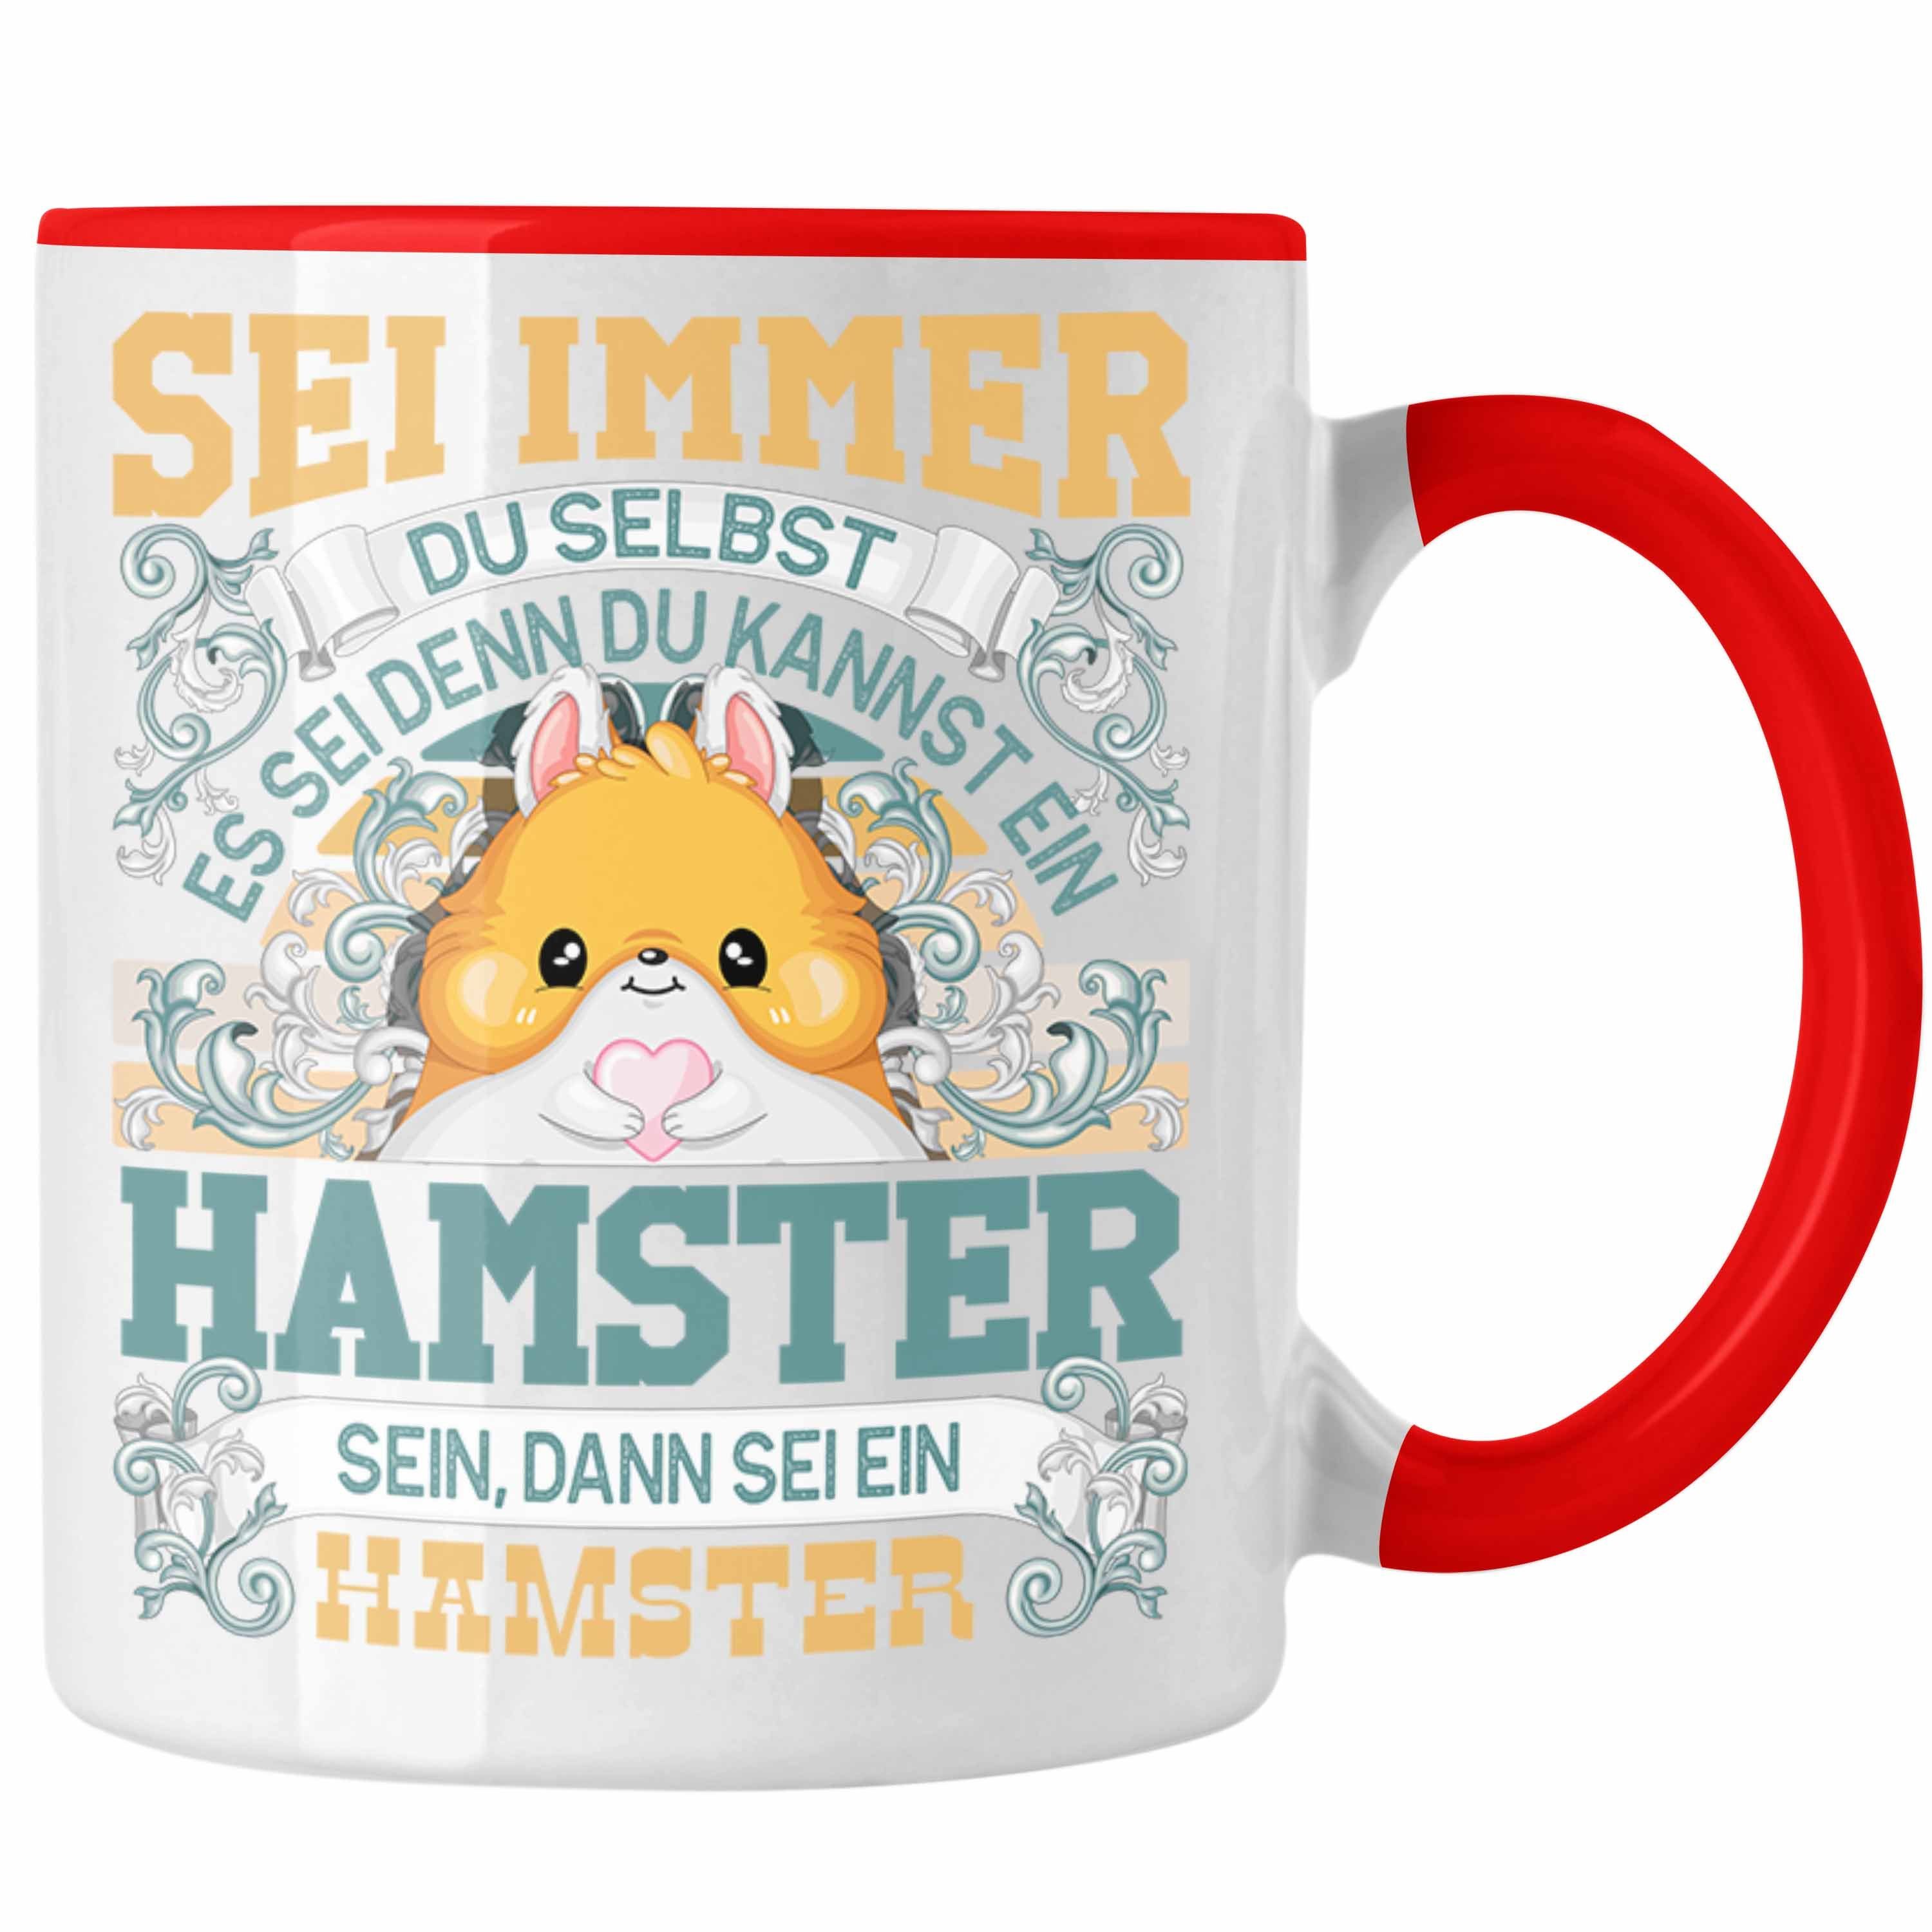 Trendation Tasse Hamster Tasse Geschenk Hamster Liebhaber Sei immer Du Selbst Spruch Rot